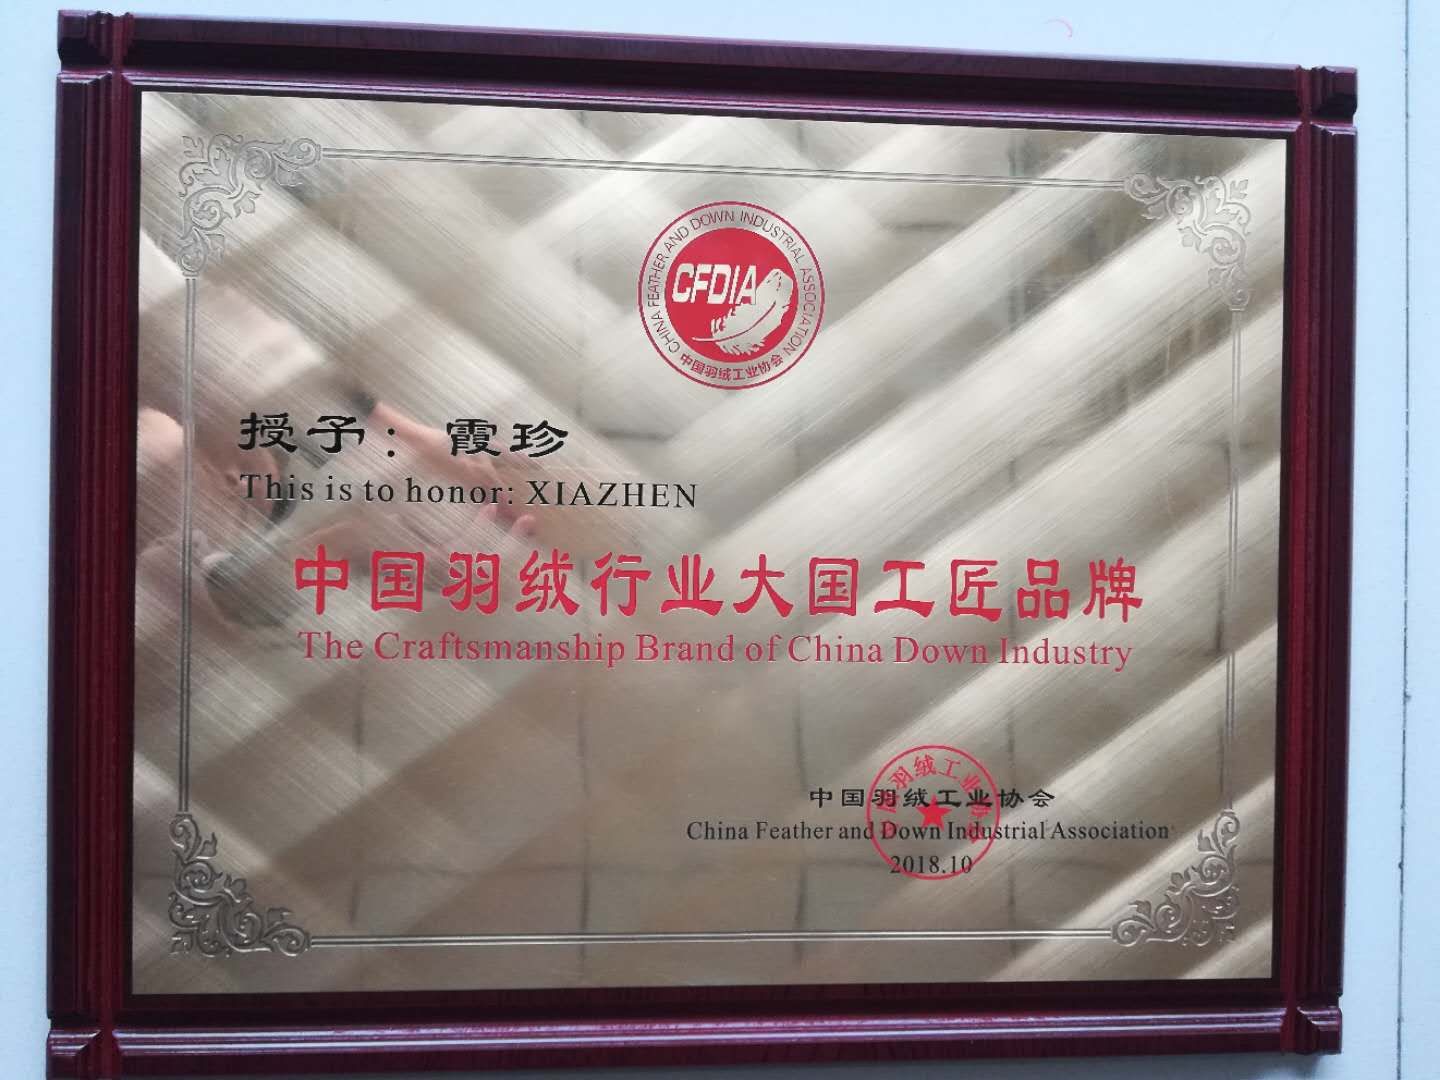 中国羽绒行业大国工匠品牌